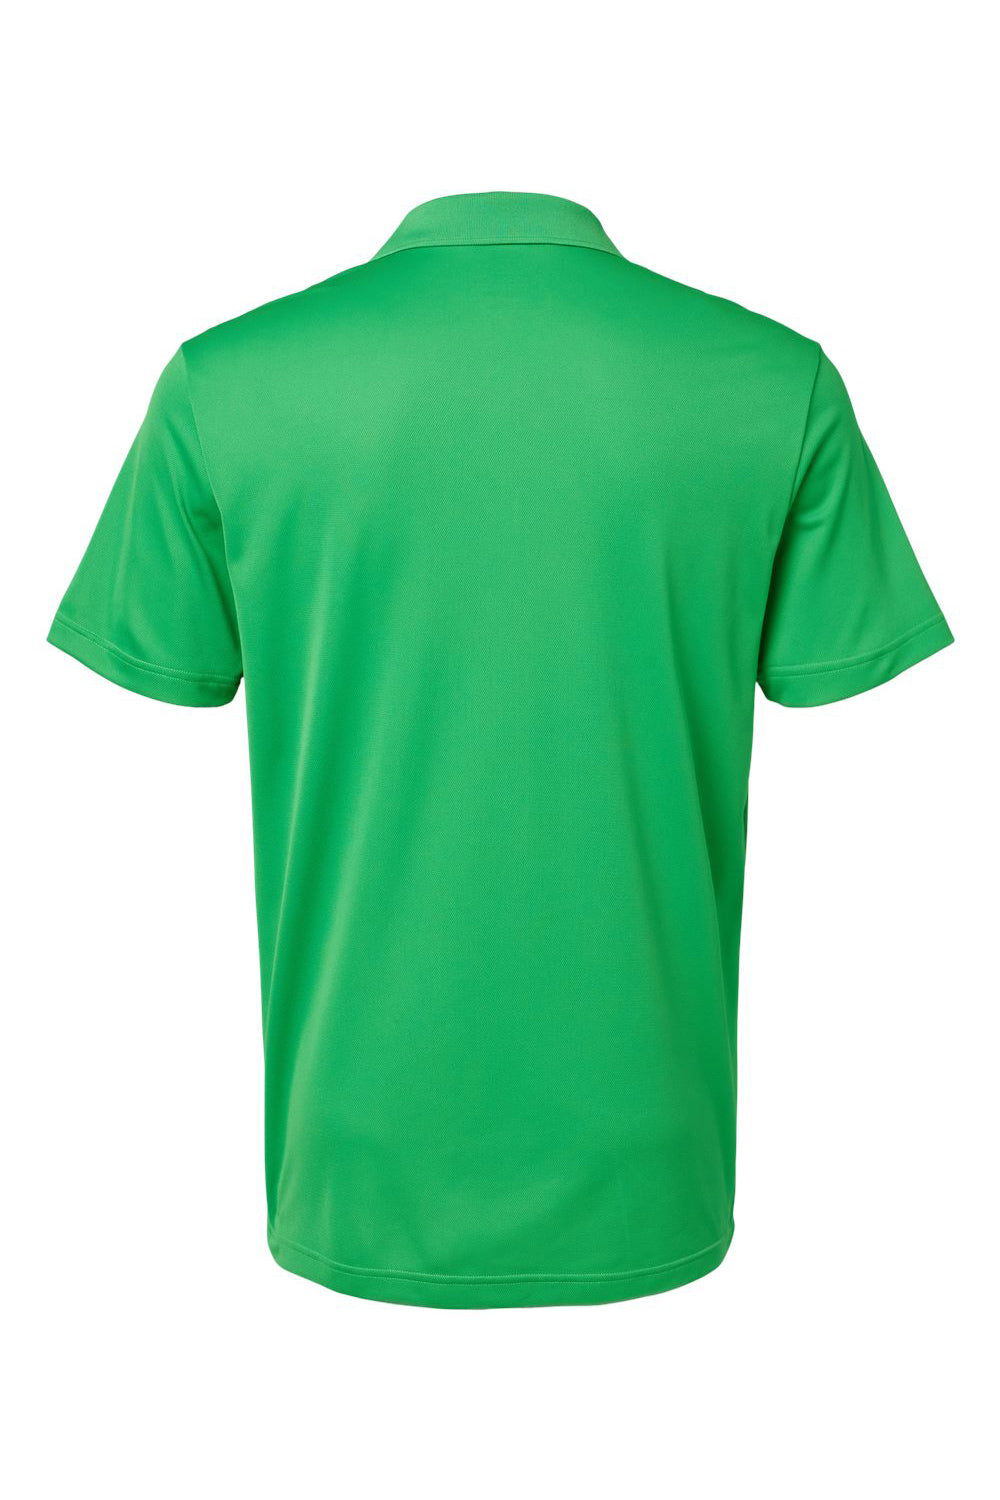 Adidas A430 Mens UV Protection Short Sleeve Polo Shirt Vivid Green Flat Back